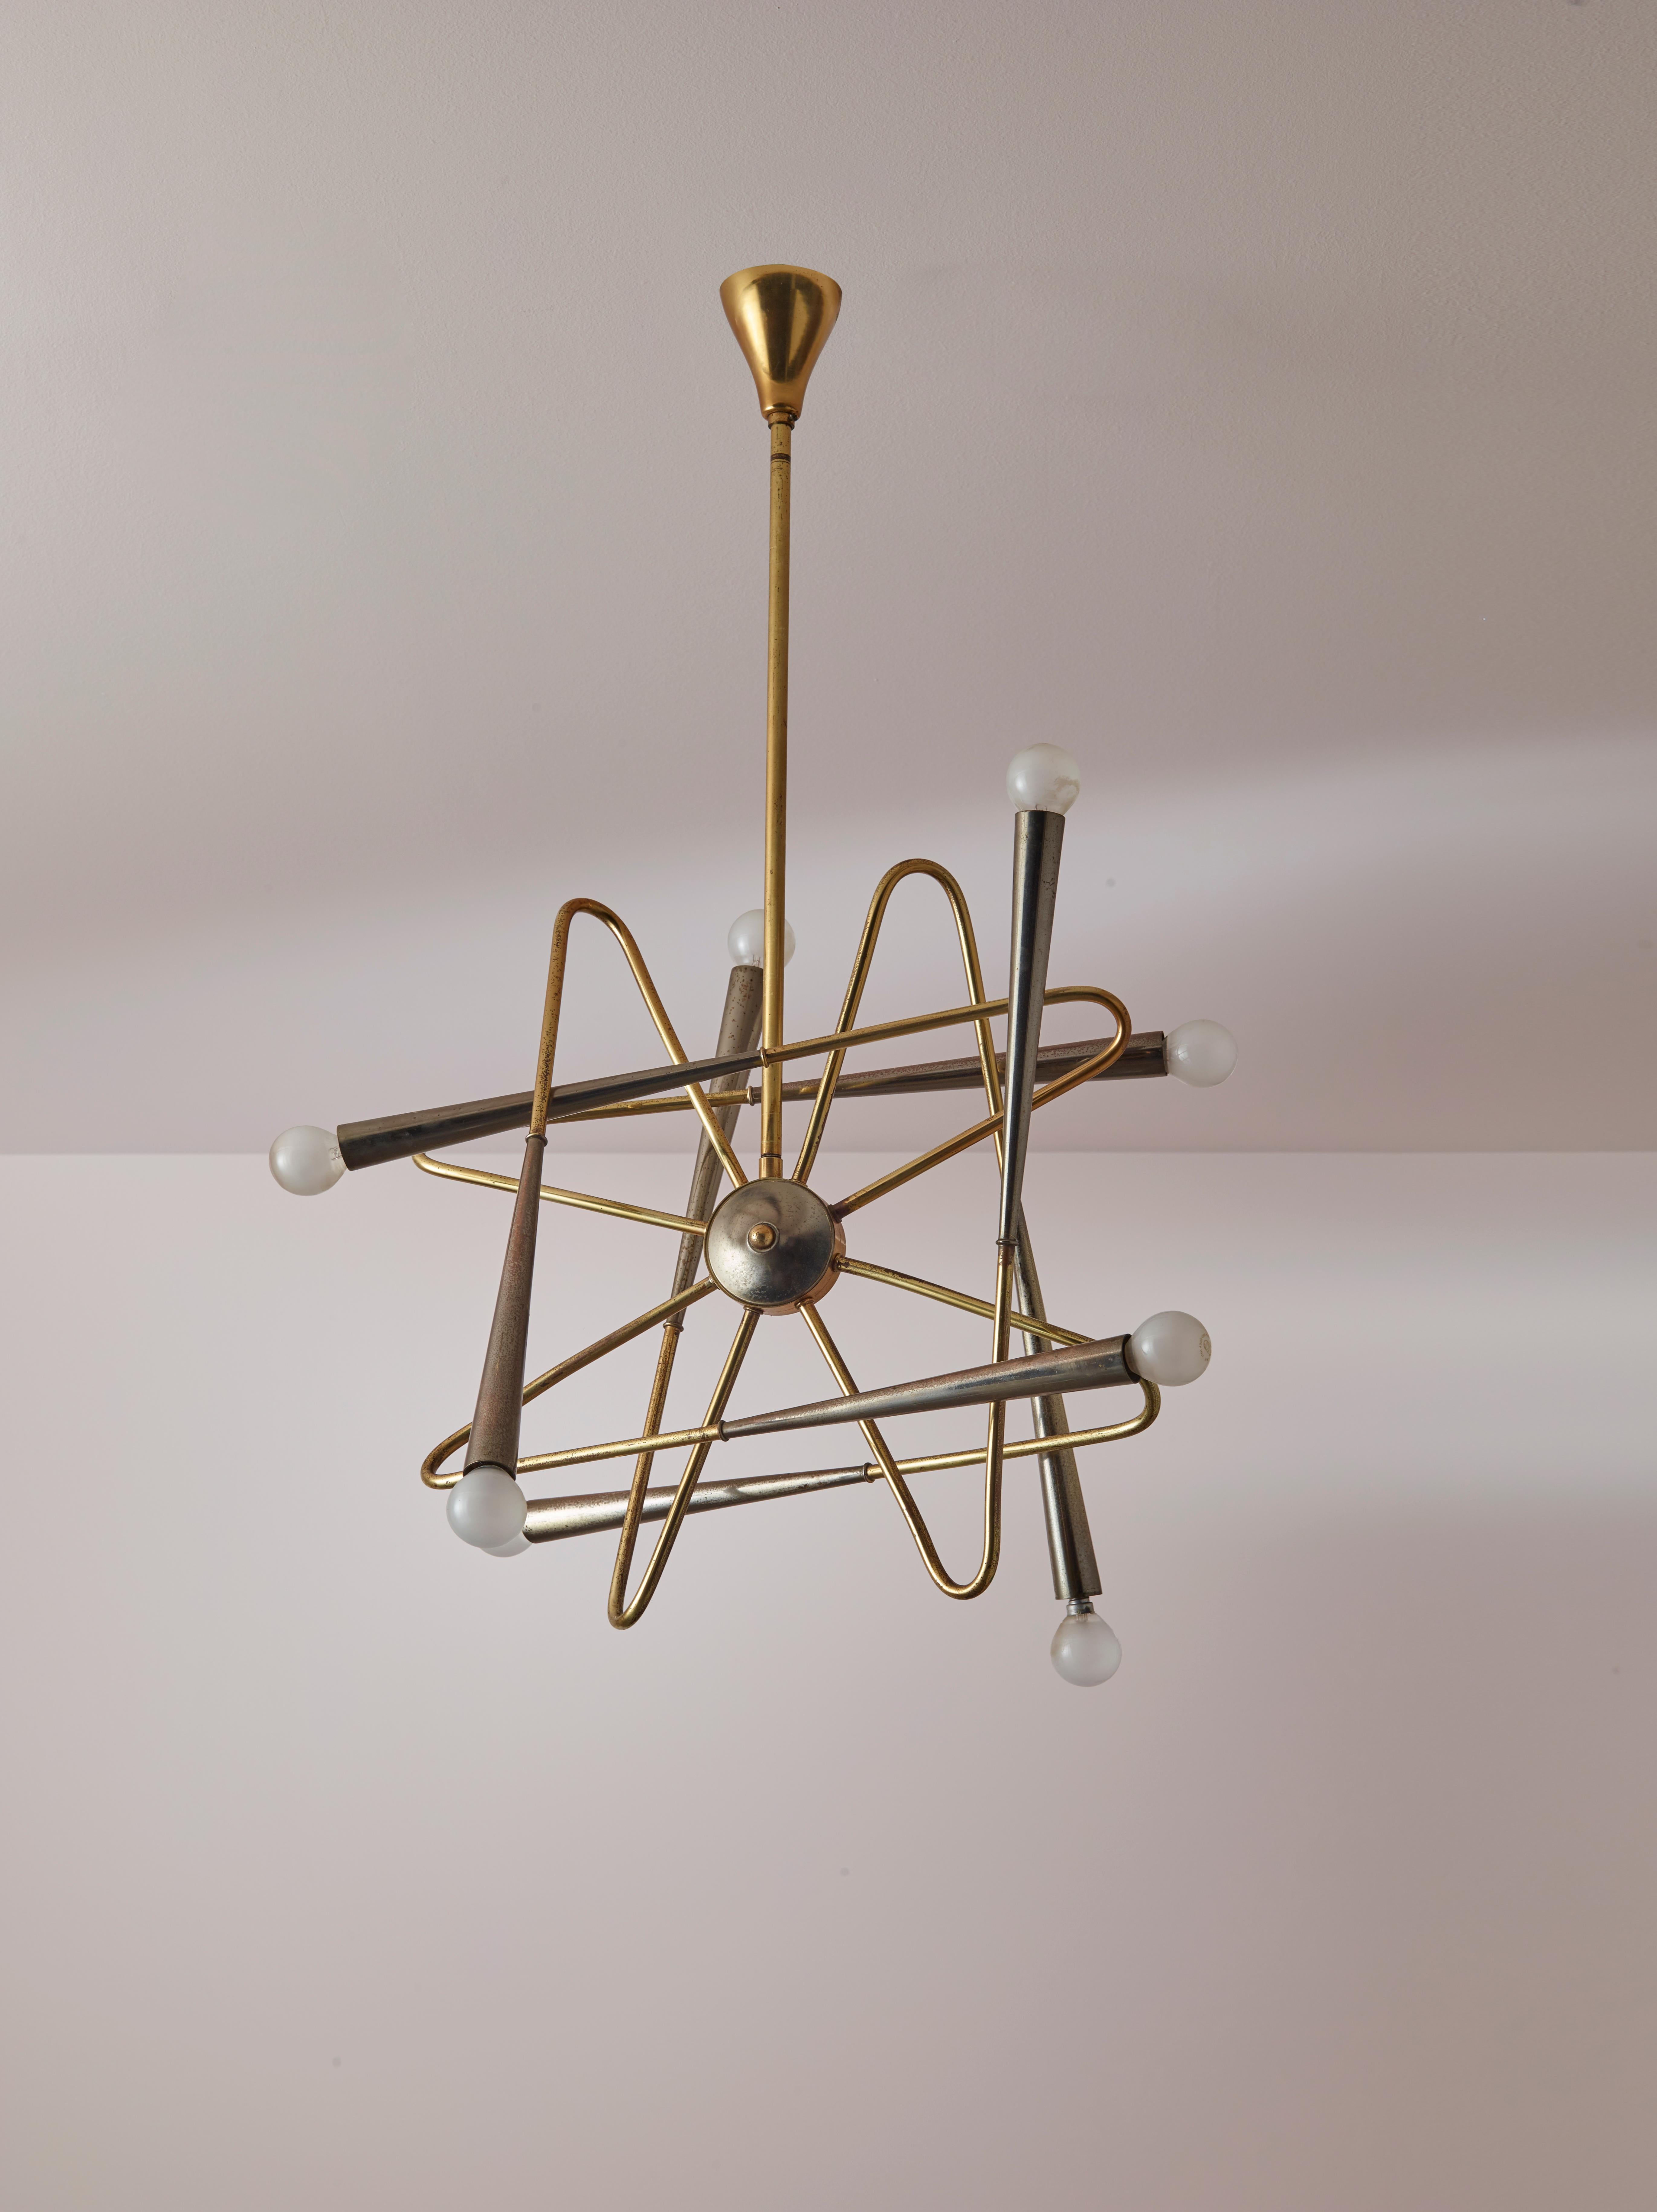 Ein Sputnik-Kronleuchter aus den 1960er Jahren, hergestellt in Italien von dem renommierten Hersteller Stilnovo. Diese seltene Leuchte besitzt ein zentrales Medaillon aus brüniertem Messing, das von einem starren Messingstab gehalten wird. Sein